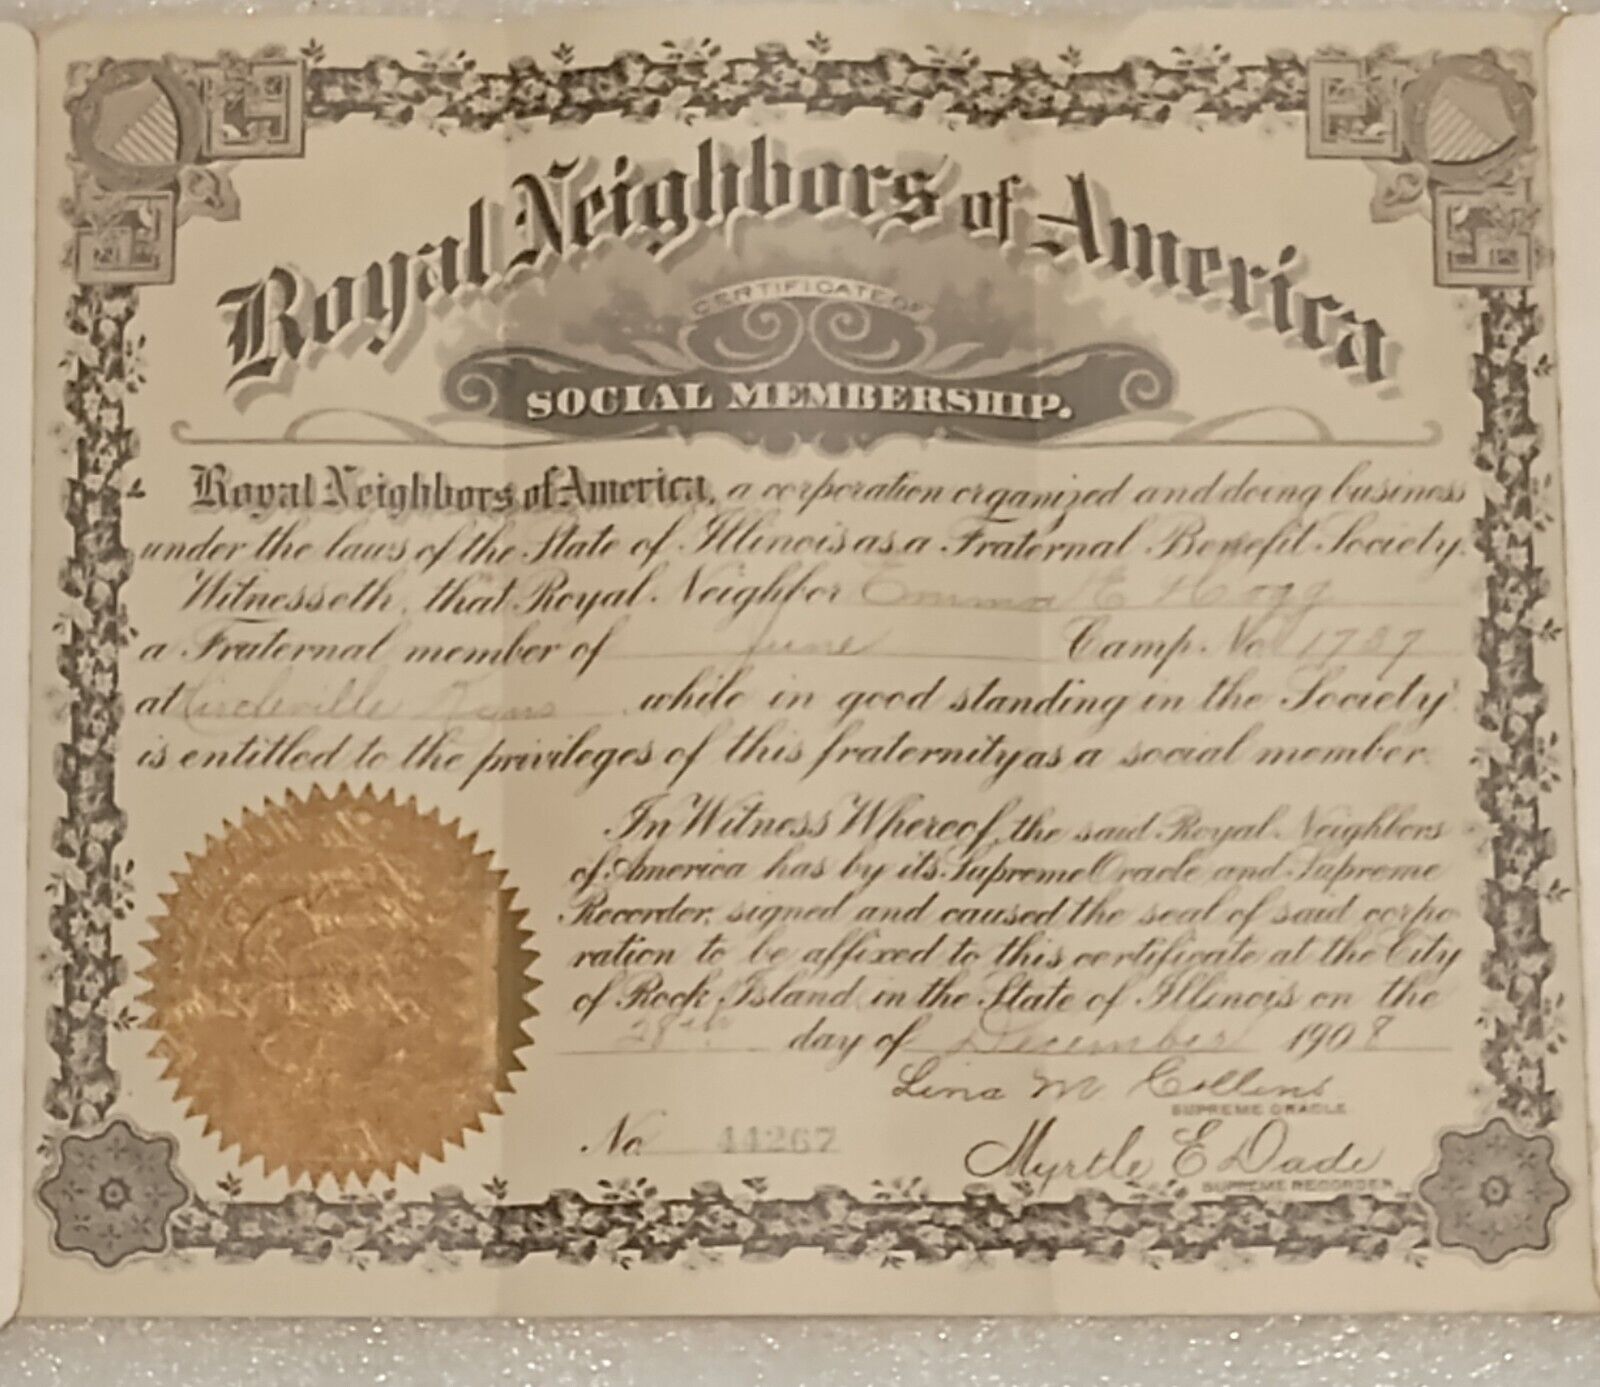 1908 - Royal Neighbors Of America Social Membership Certificate